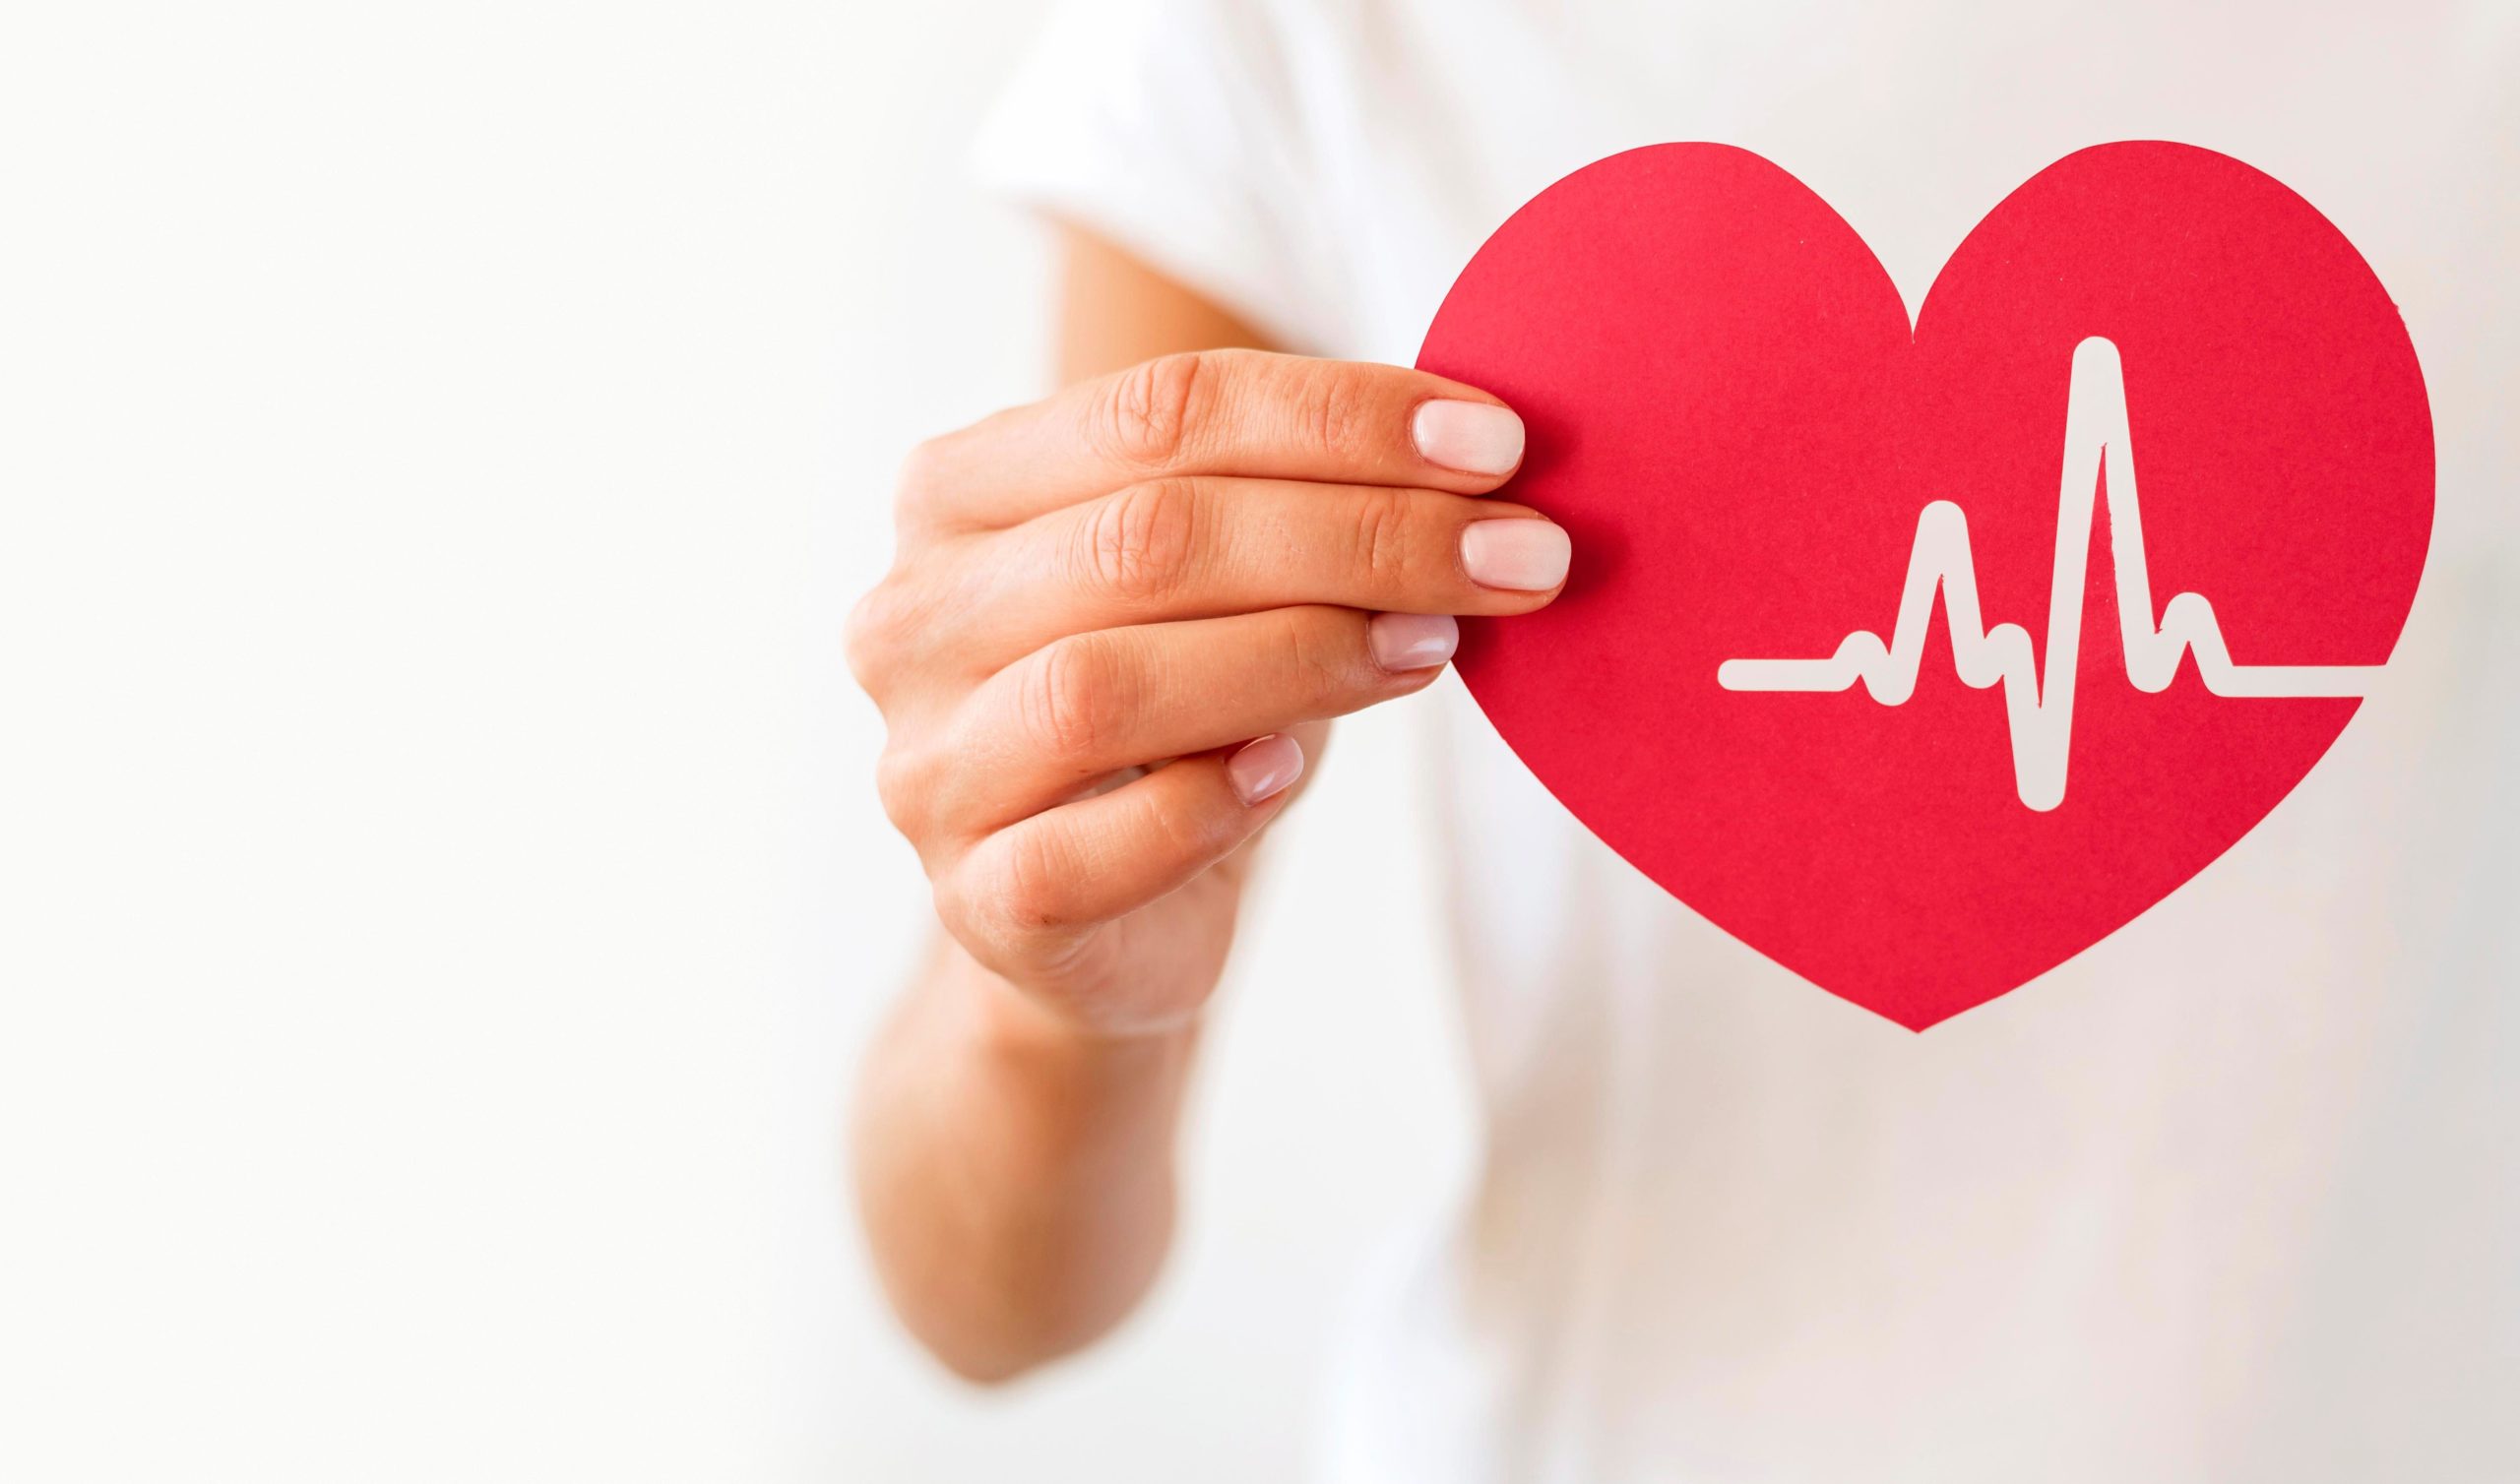 Пробиотики и Сердце: Влияние Микробиома на Здоровье Сердечно-Сосудистой Системы